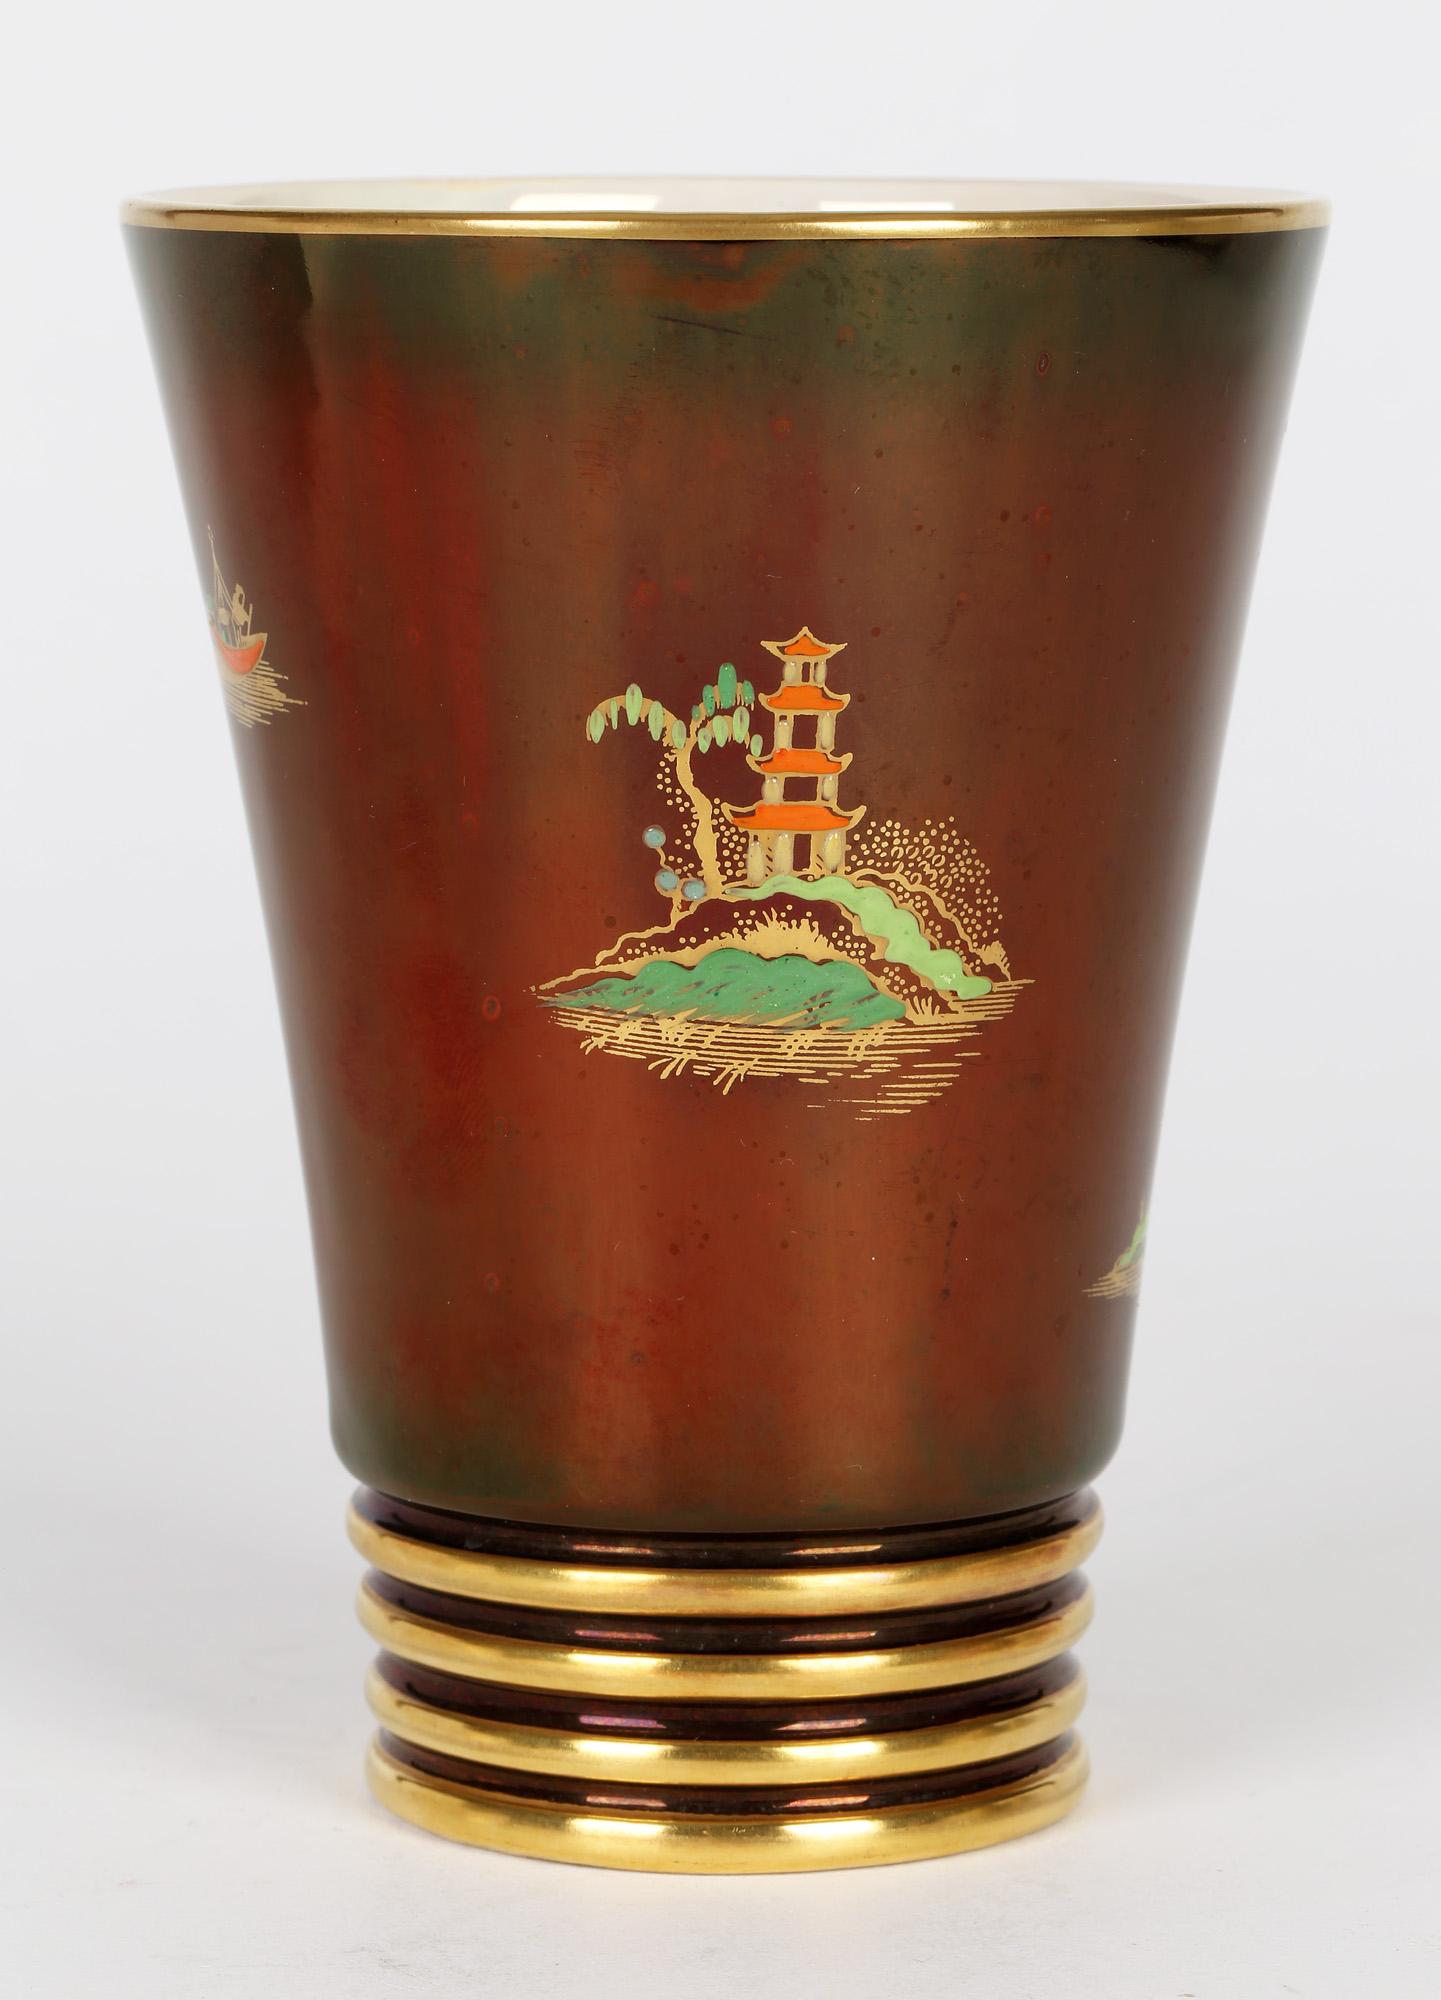 Eine fein gearbeitete Art Deco Carlton Ware Keramik Rouge Royal Mikado Muster Vase aus der Zeit zwischen 1935 und 1955. Die Vase hat eine konische Form und steht auf einem schmalen, abgerundeten Fuß mit vier geformten Ringen um den unteren Rand. Der